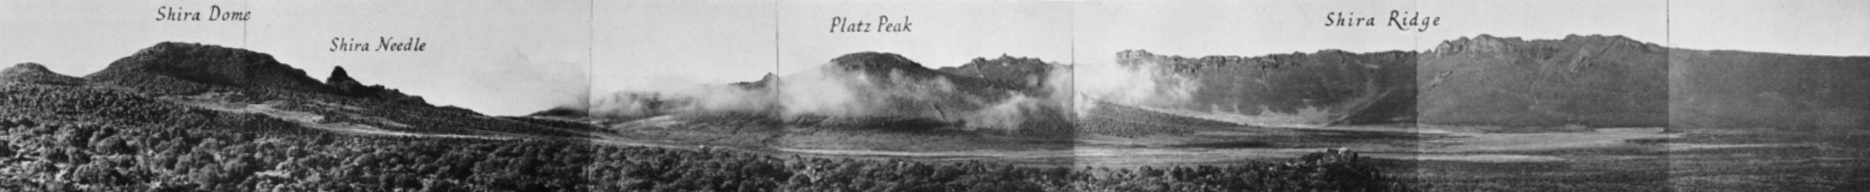 Das Shira Platau 1948.Mit dem zentralem Platz Kegel - hier Platz Peak genannt. Panoramabild aus Einzelaufnahmen von Georg Salt. [3]